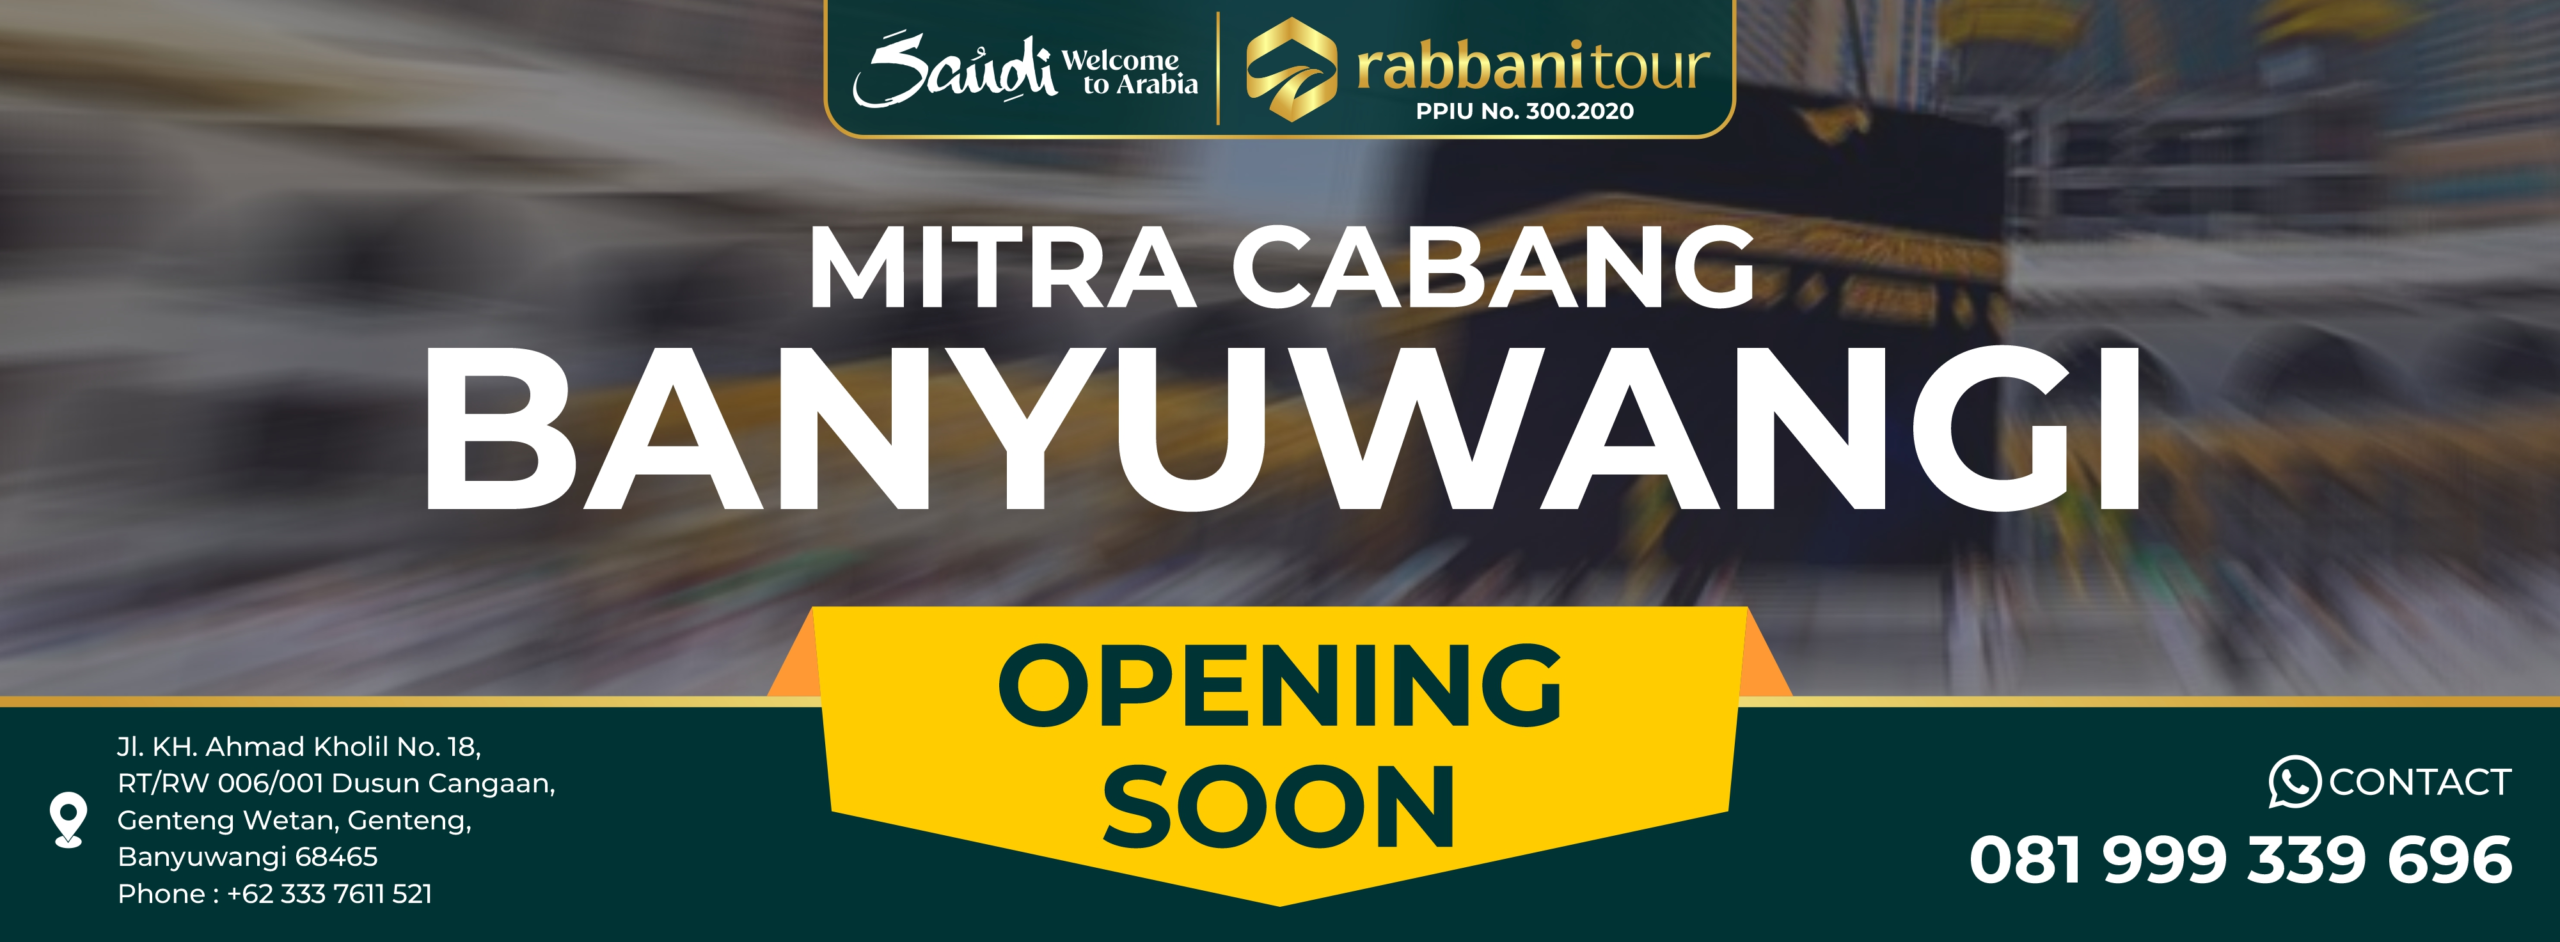 Web banner opening soon banyuwangi scaled - Rabbanitour